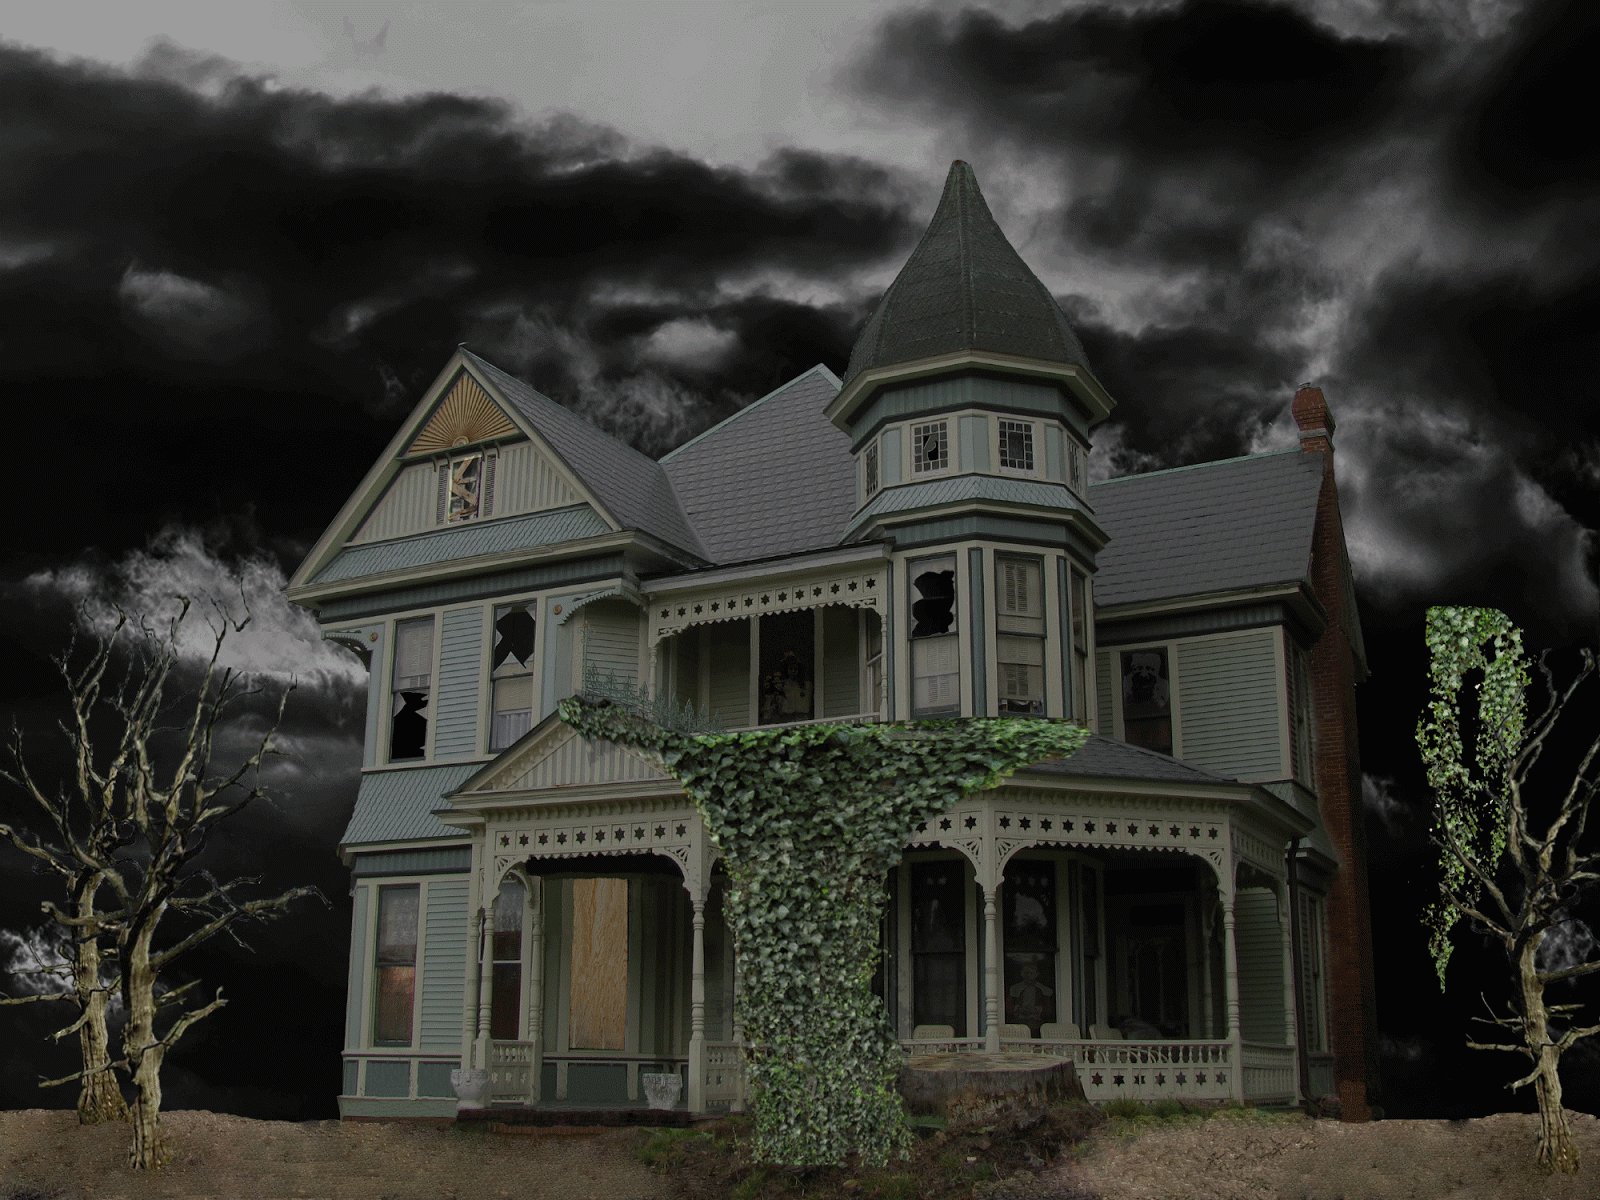 Sammys Blog Haunted House